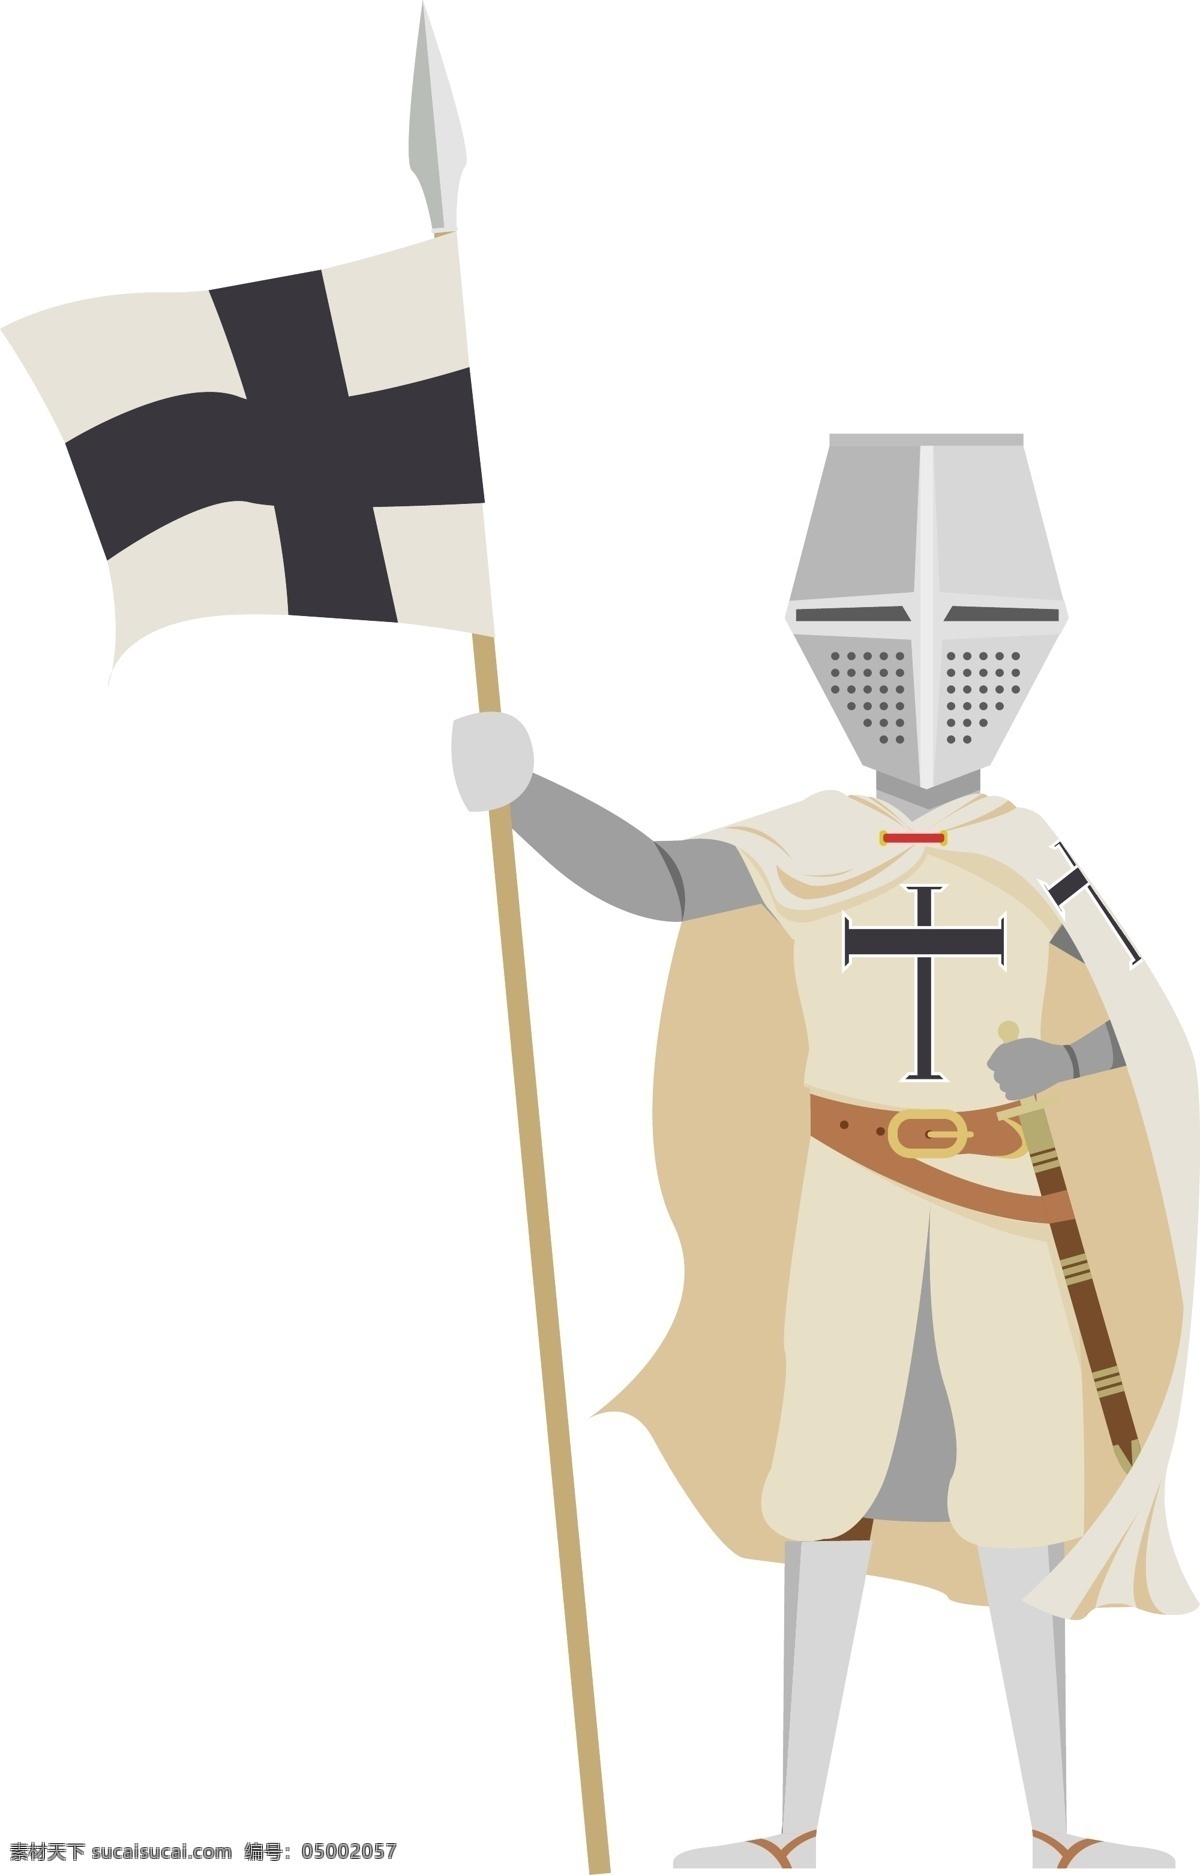 欧洲 十字军 骑士 服装 盔甲 卡通 人物 卡通人物 矢量